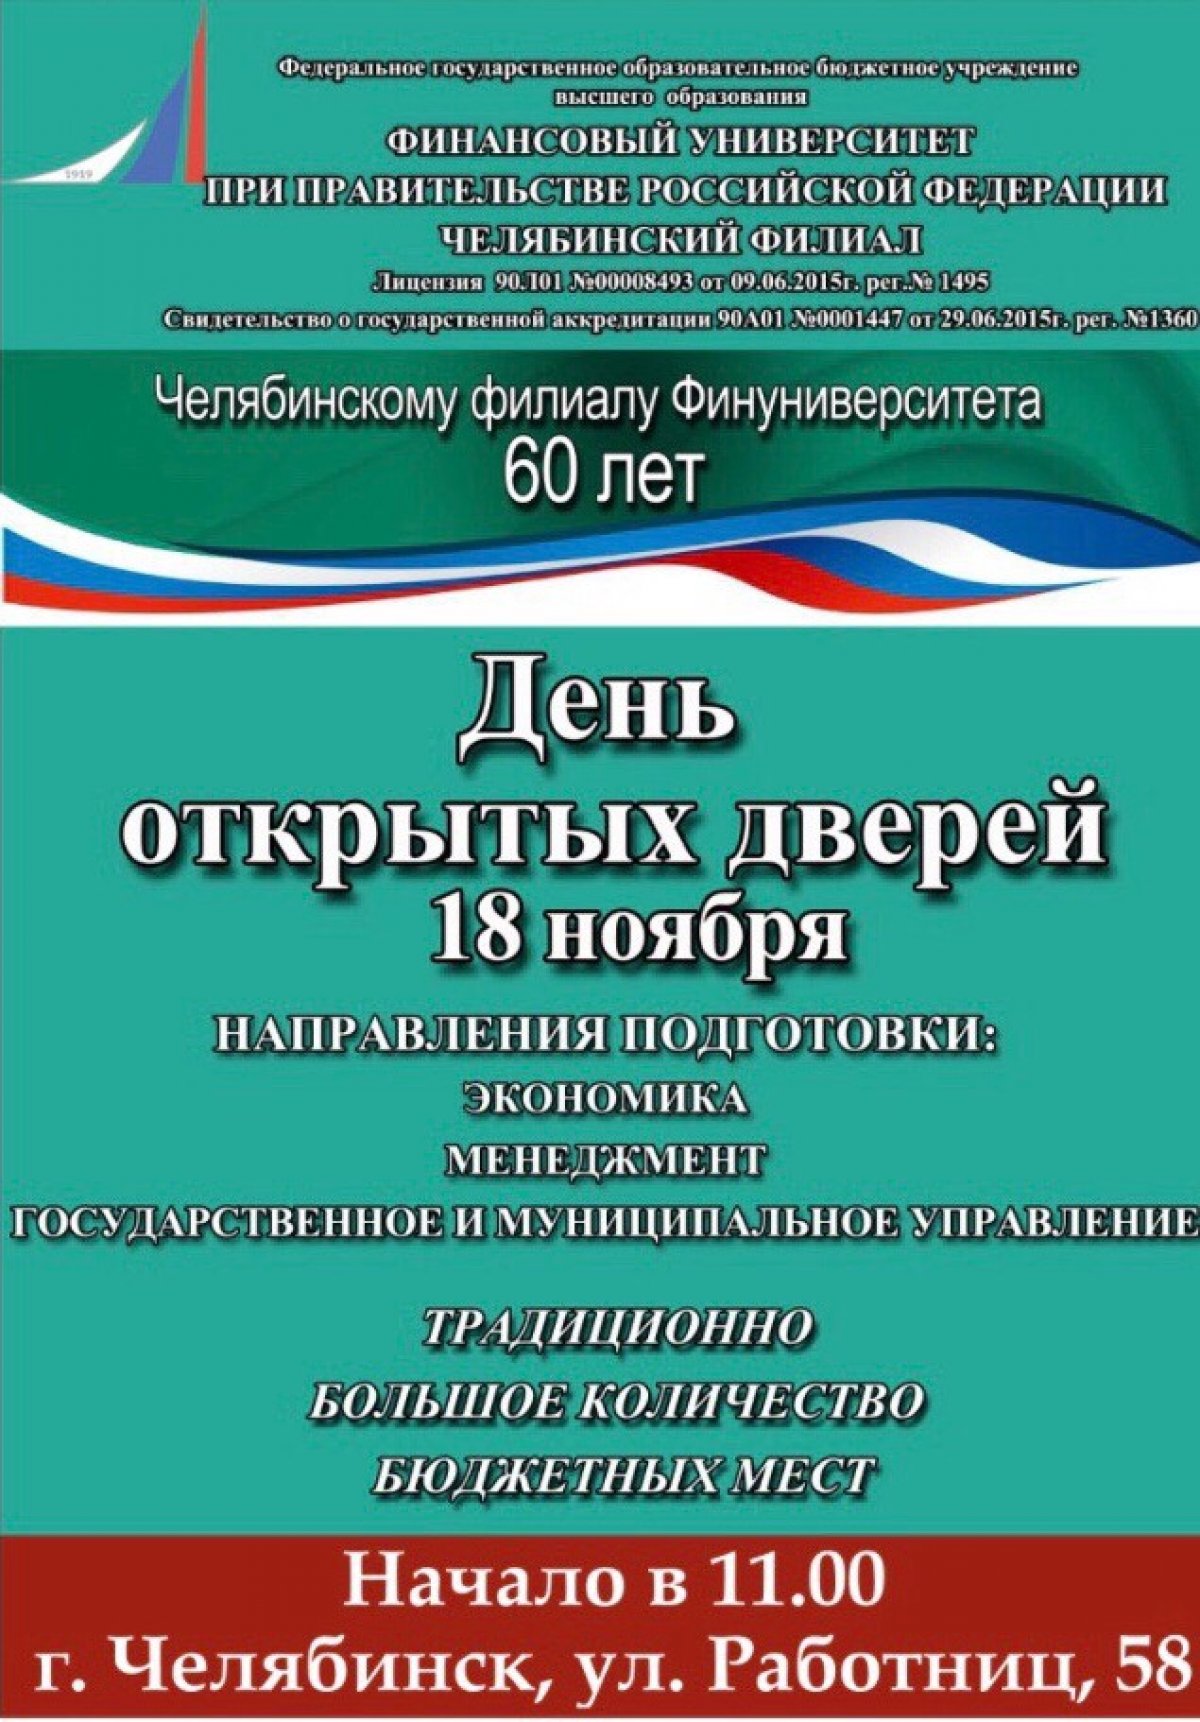 Приглашаем на день открытых дверей в Финансовый университет при правительстве РФ Челябинский филиал!